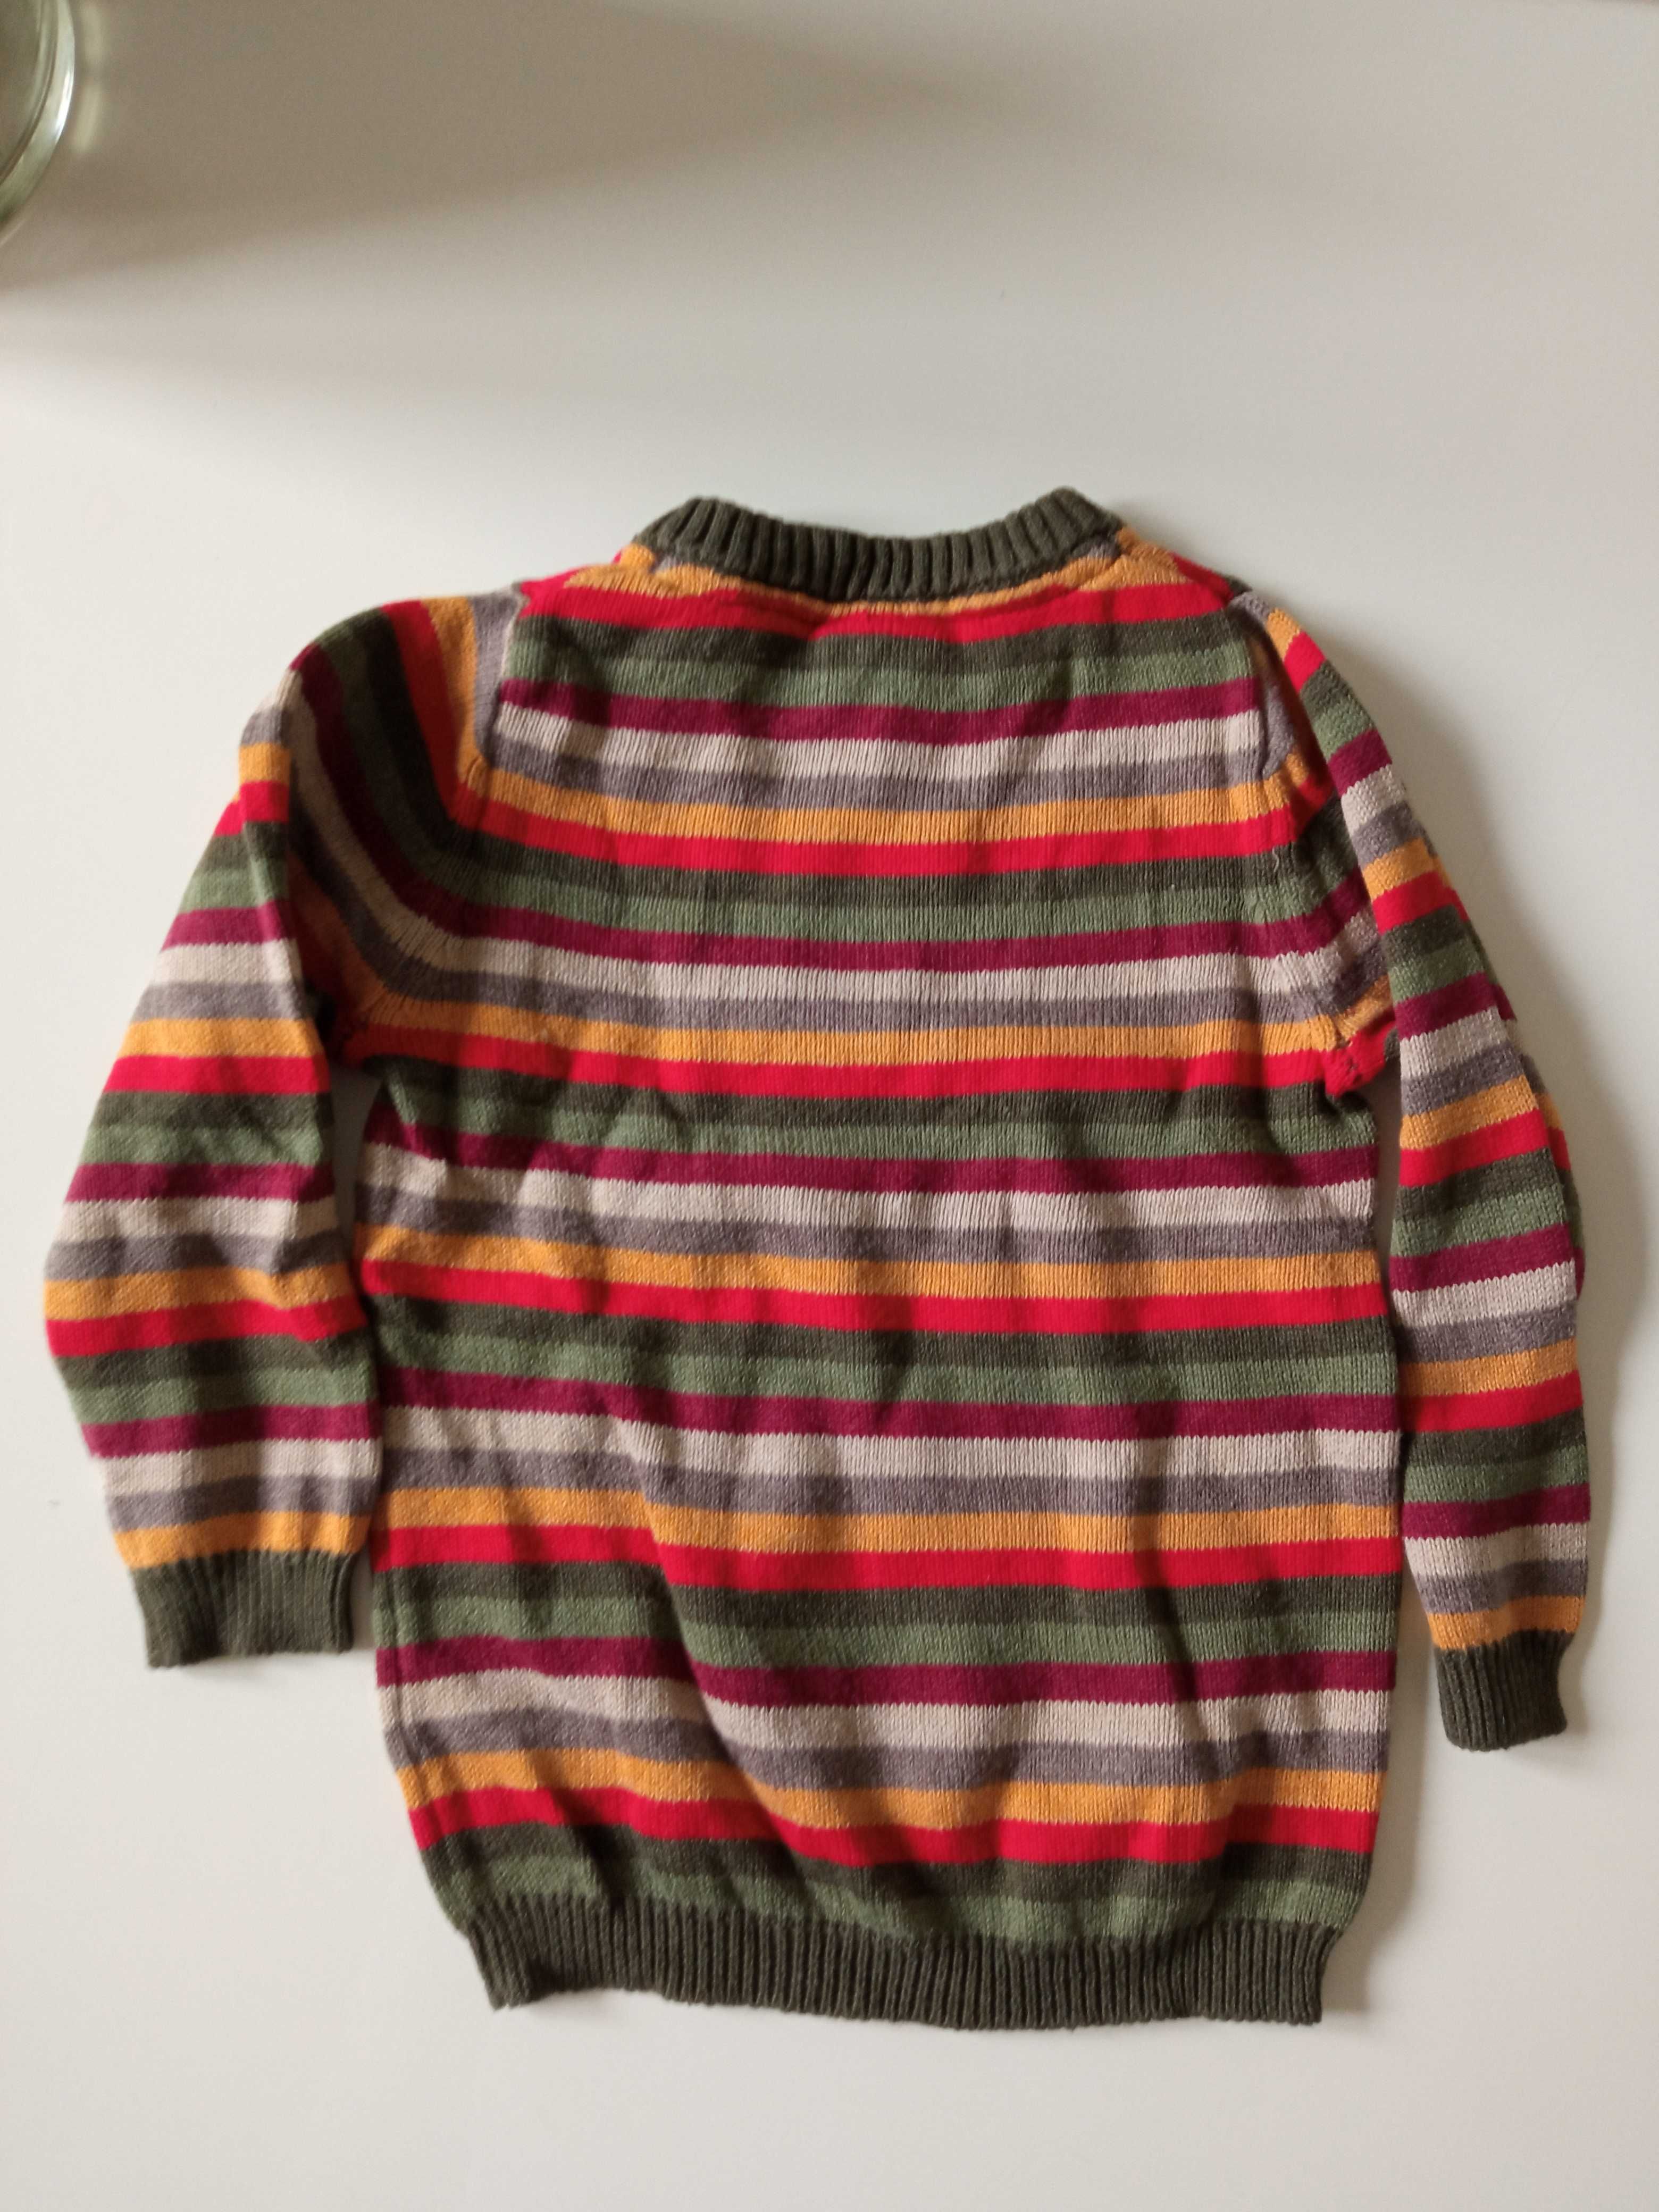 Wunderbärchen sweterek dziecięcy przez głowę bawełna r 86